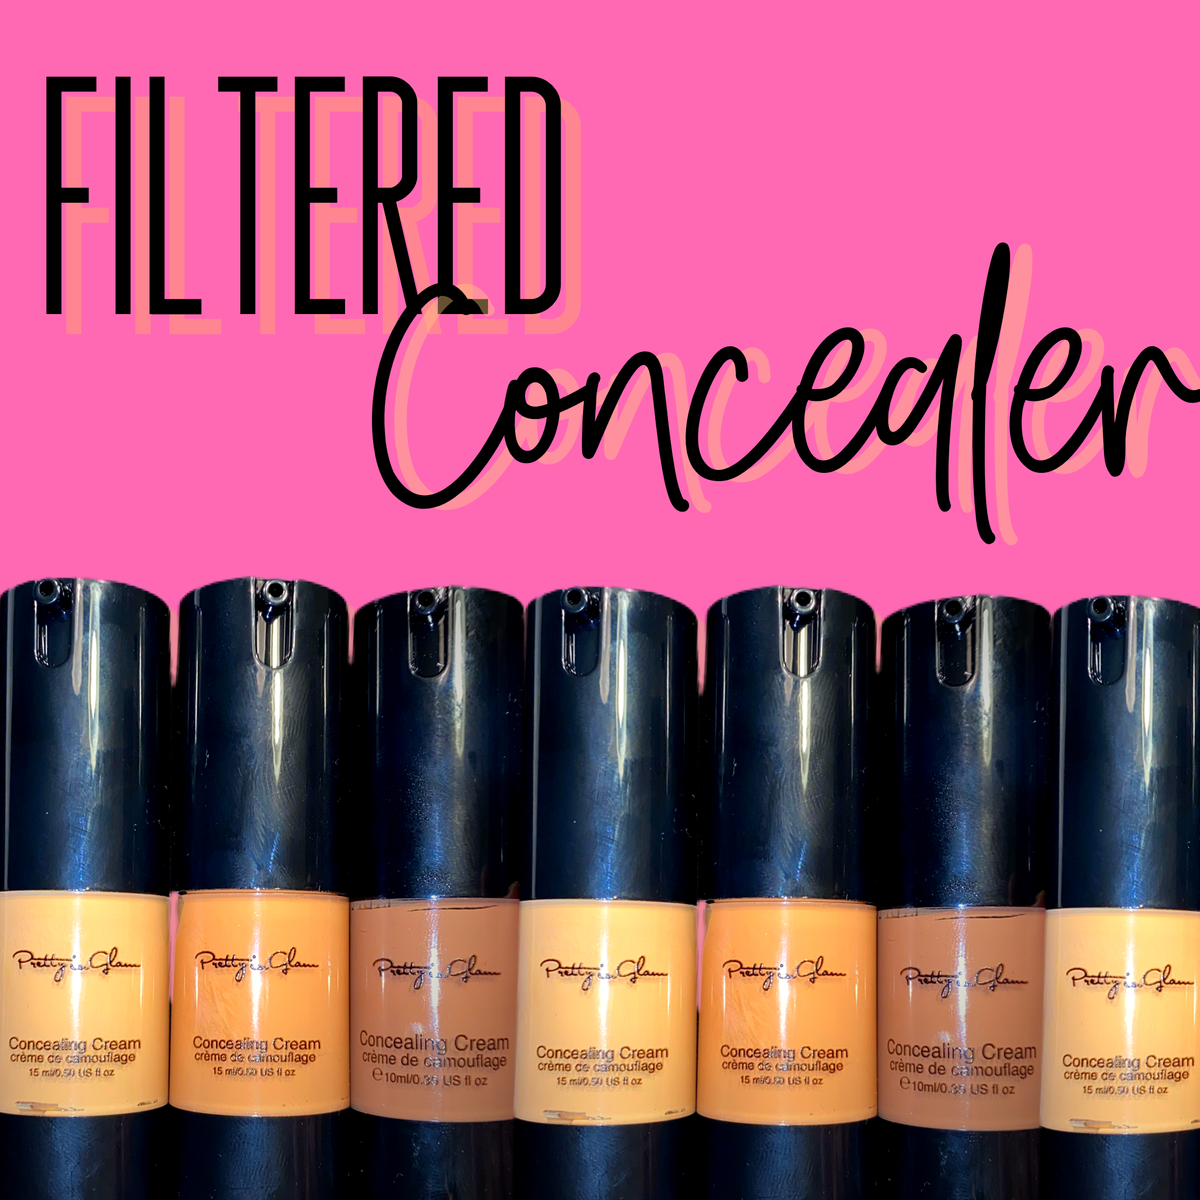 Filtered Concealer